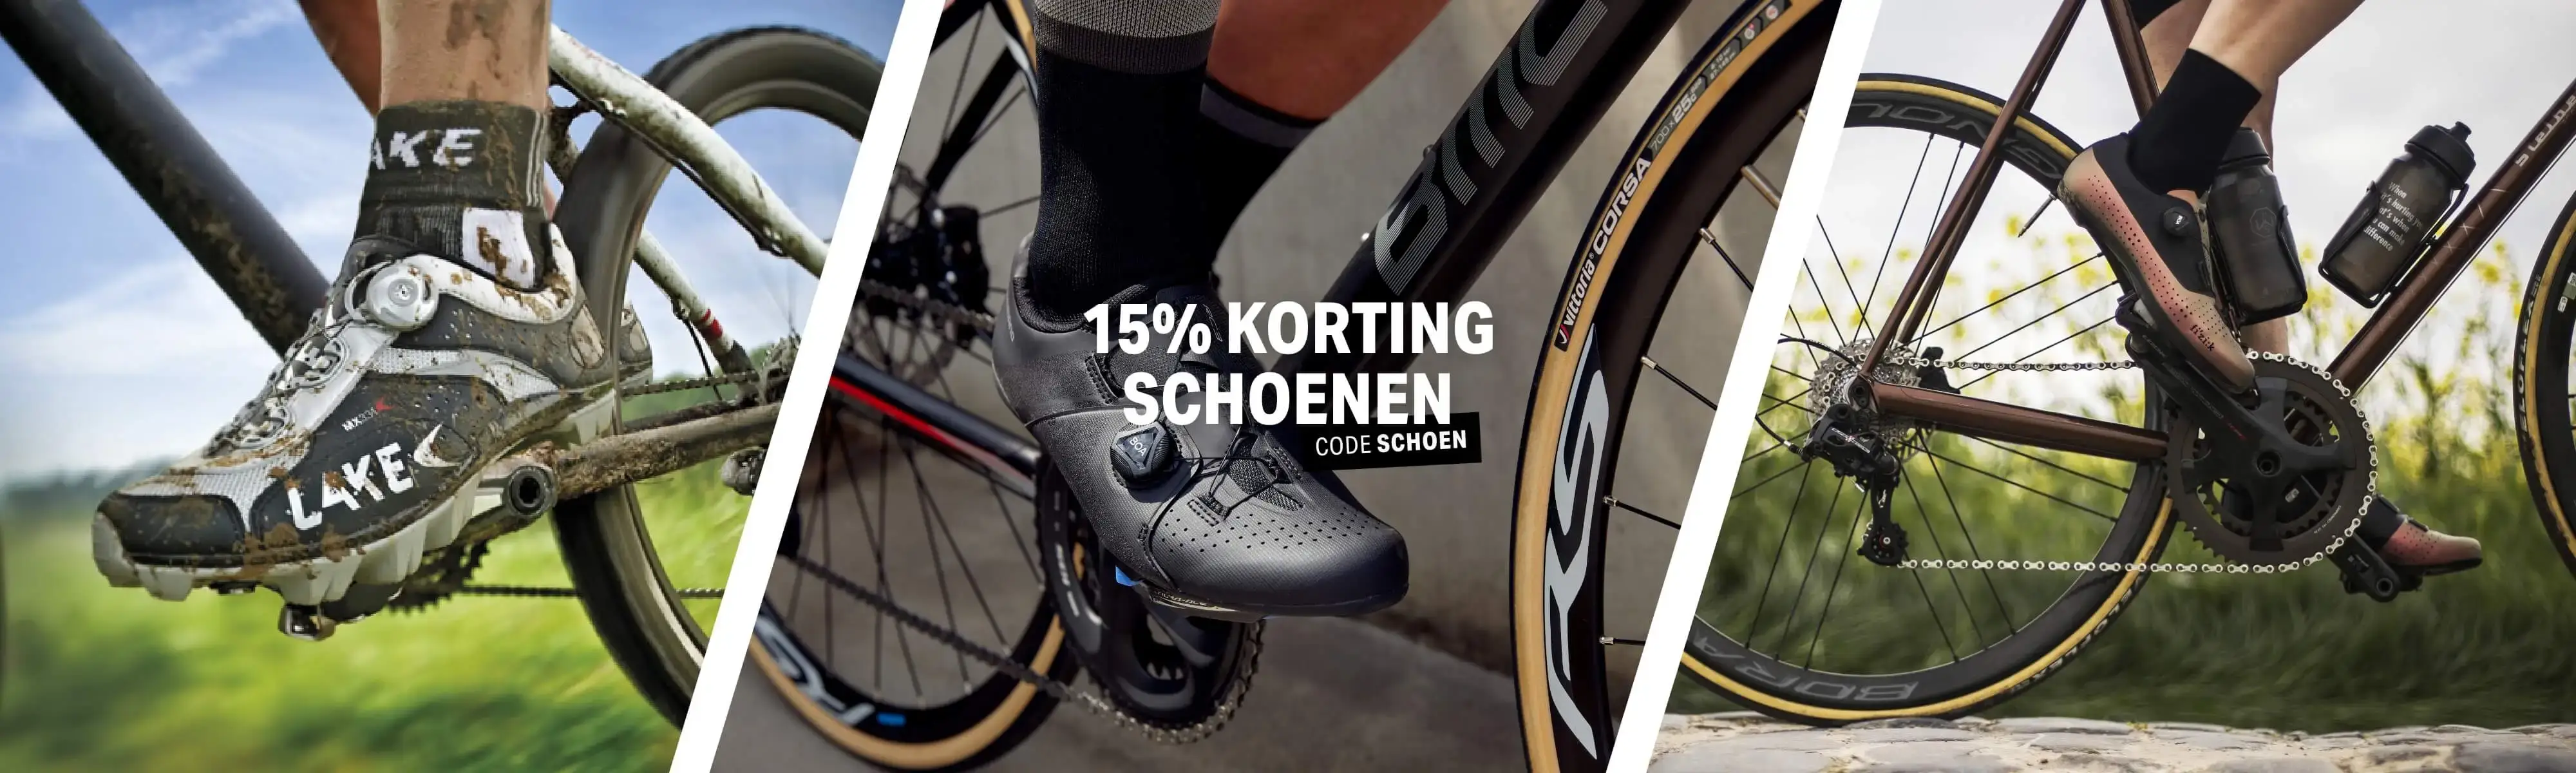 Mijlpaal meesteres aan de andere kant, 15% korting op alle schoenen | FuturumShop.nl